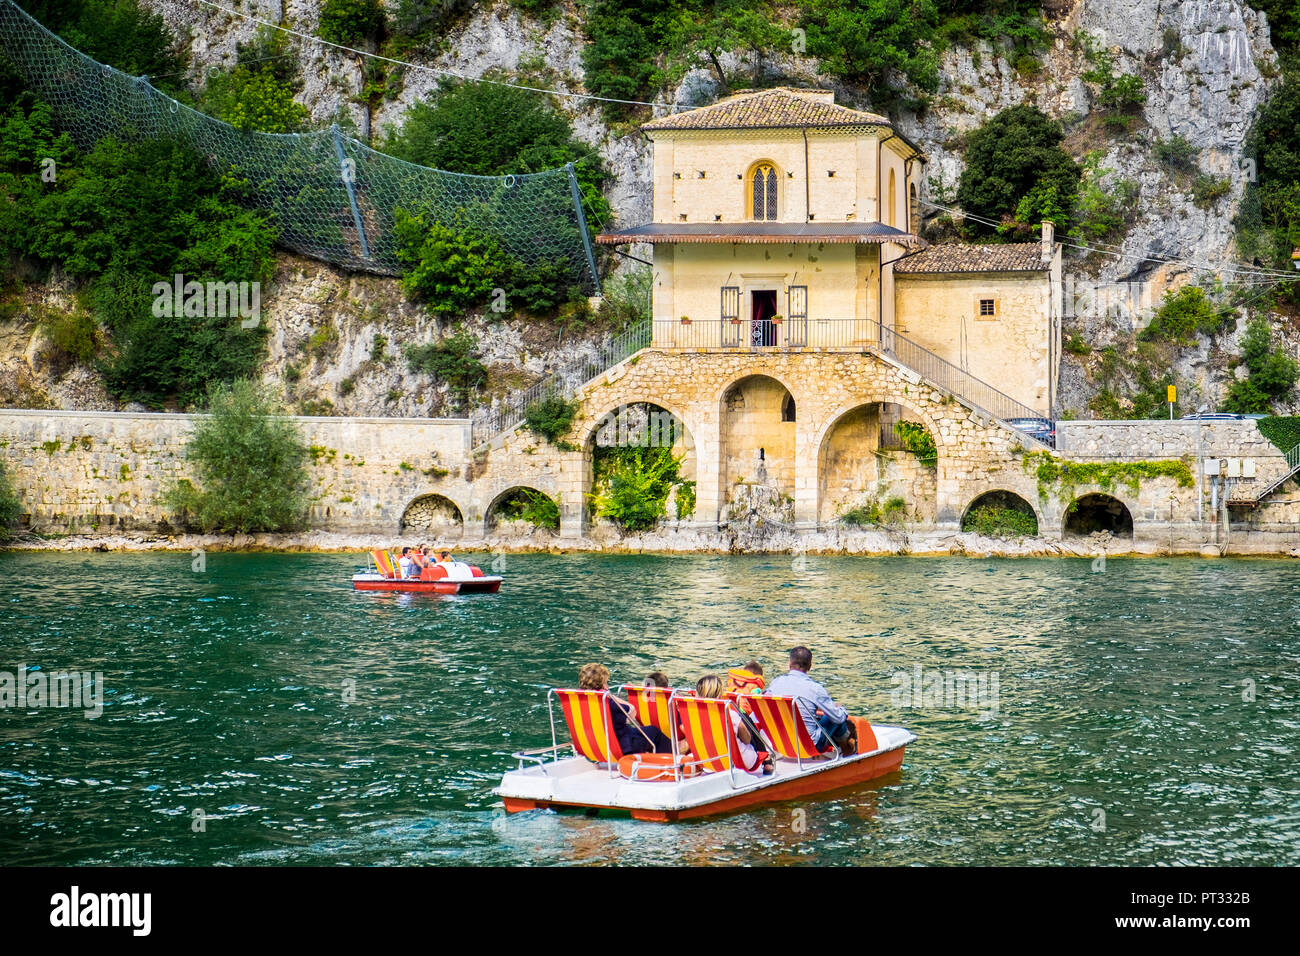 Il Lago di Scanno, Scanno, Abruzzo, Italia Centrale, Europa, i turisti su un pedalò vicino alla piccola chiesa Madonna del Lago, Foto Stock